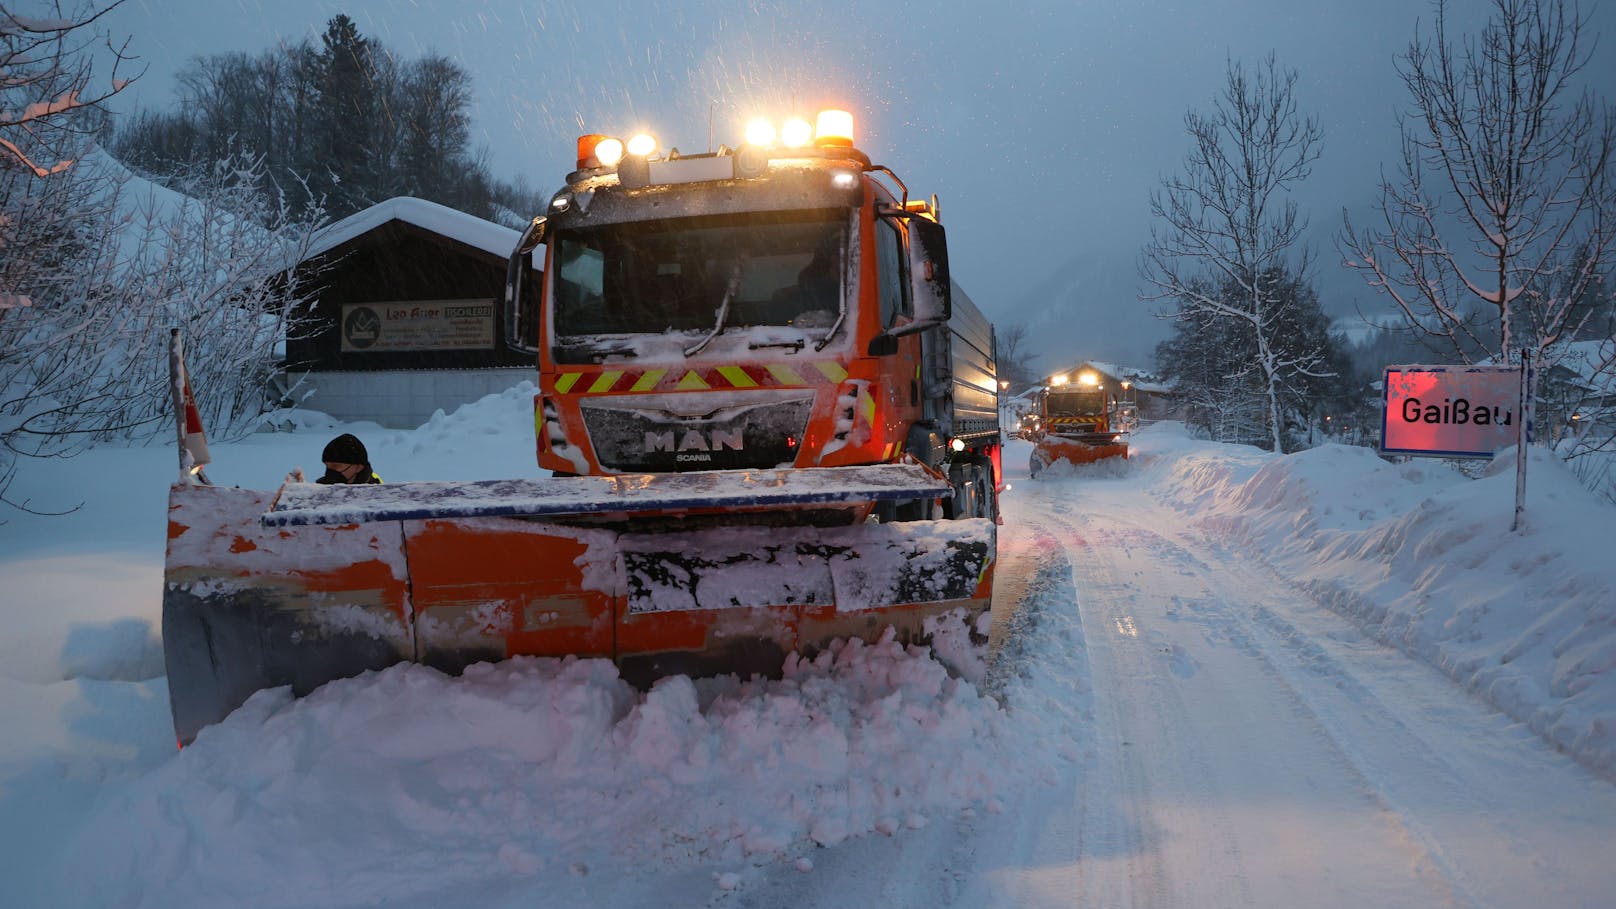 Österreich darf sich in den kommenden Tagen über Schnee freuen.